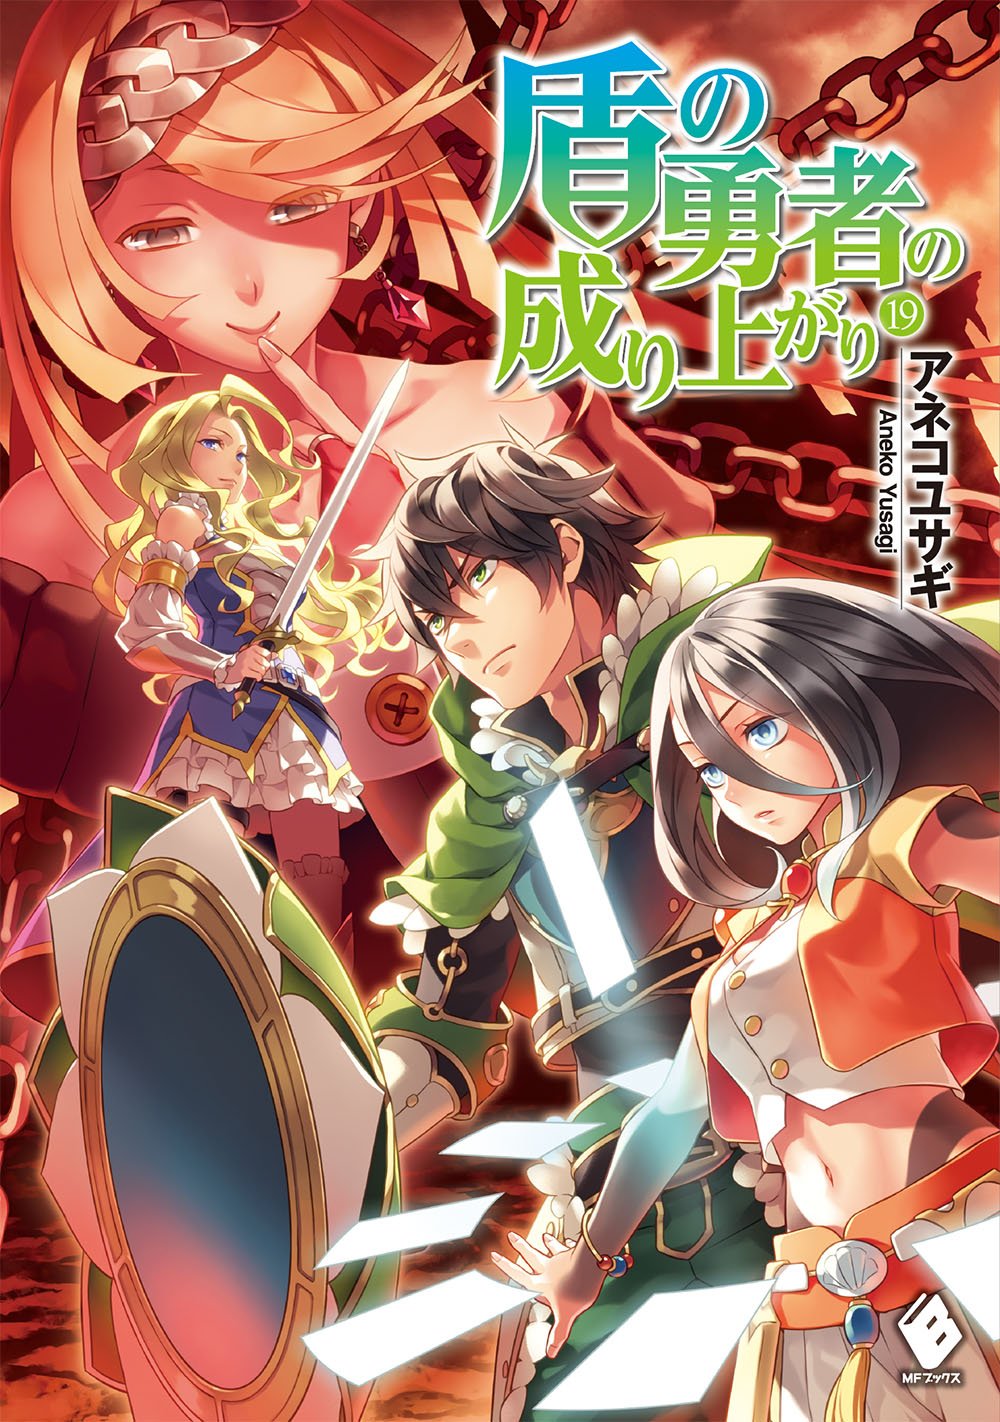 Light Novel Volume 5, The Rising of the Shield Hero Wiki